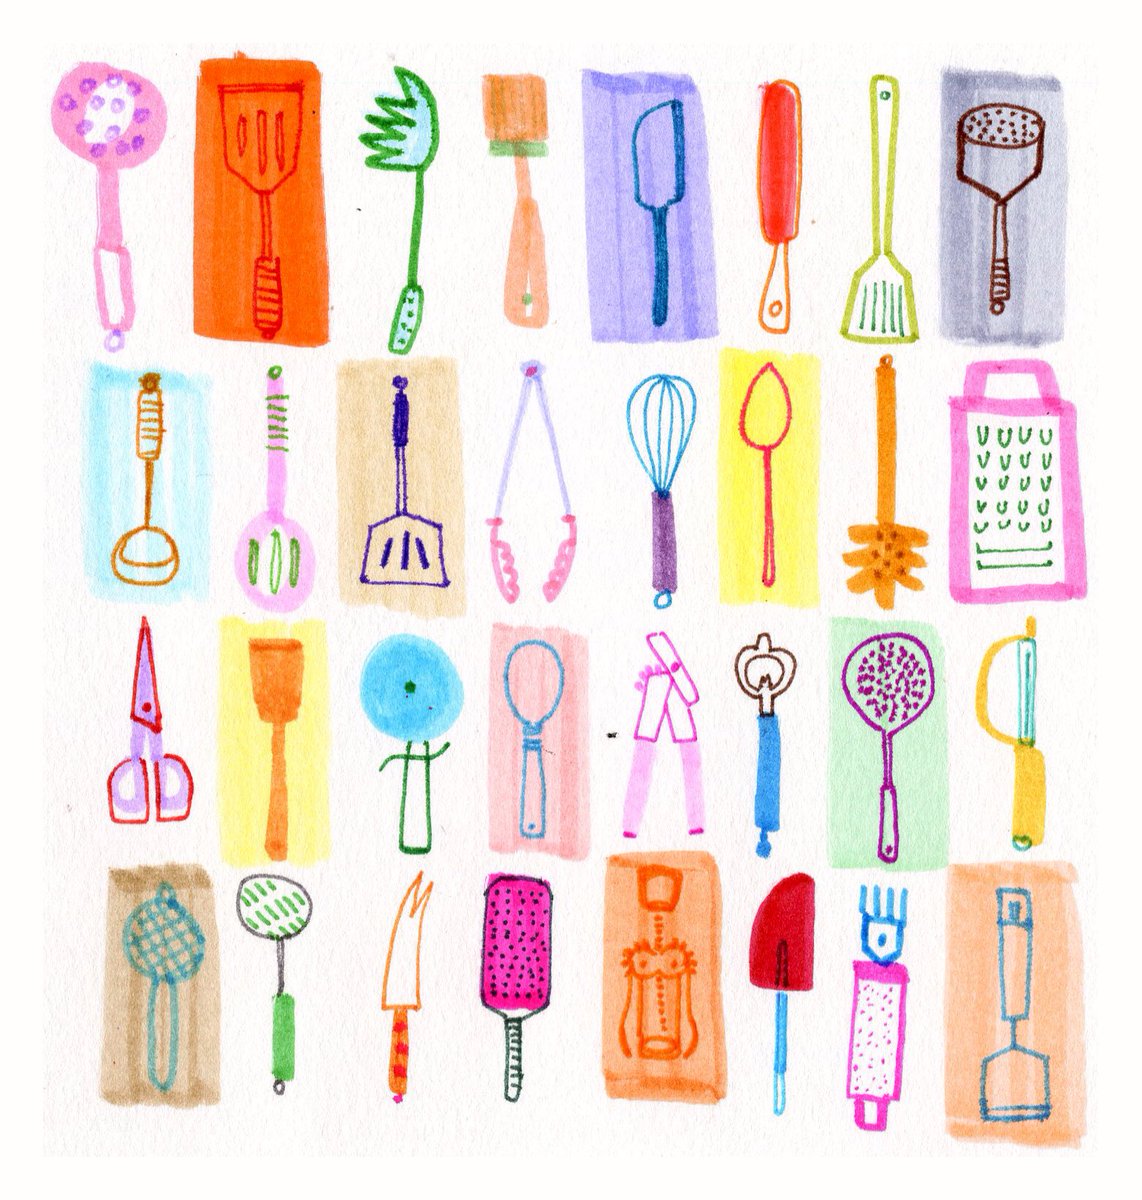 Kitchen utensils. 
#dailydrawing #kitchenutensils #felttips #ArtistOnTwitter #Thedailysketch